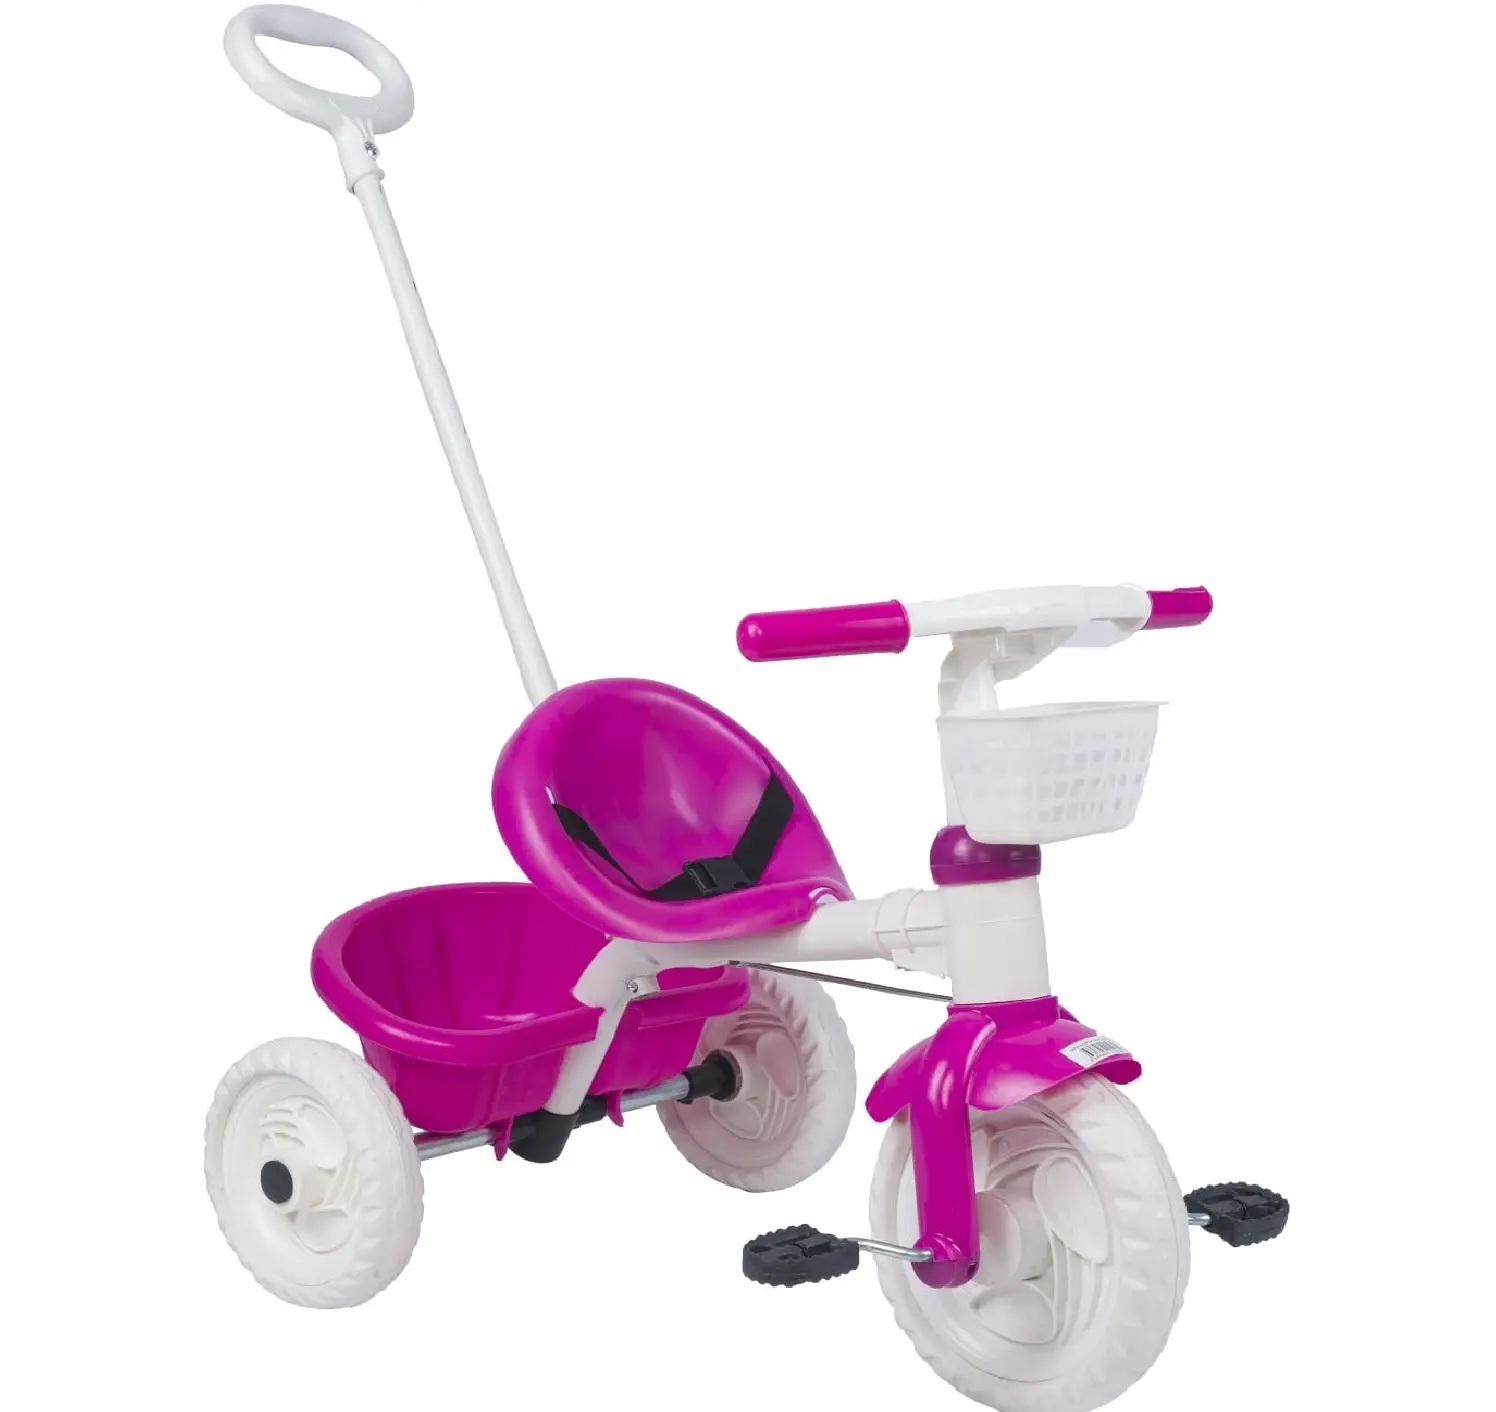 Детский трехколесный велосипед с эффектом пуш-ап, детский трехколесный велосипед, детский трехколесный велосипед с мягкими колесами, детский трехколесный велосипед, слайд, веселые игрушки, велосипеды для детей